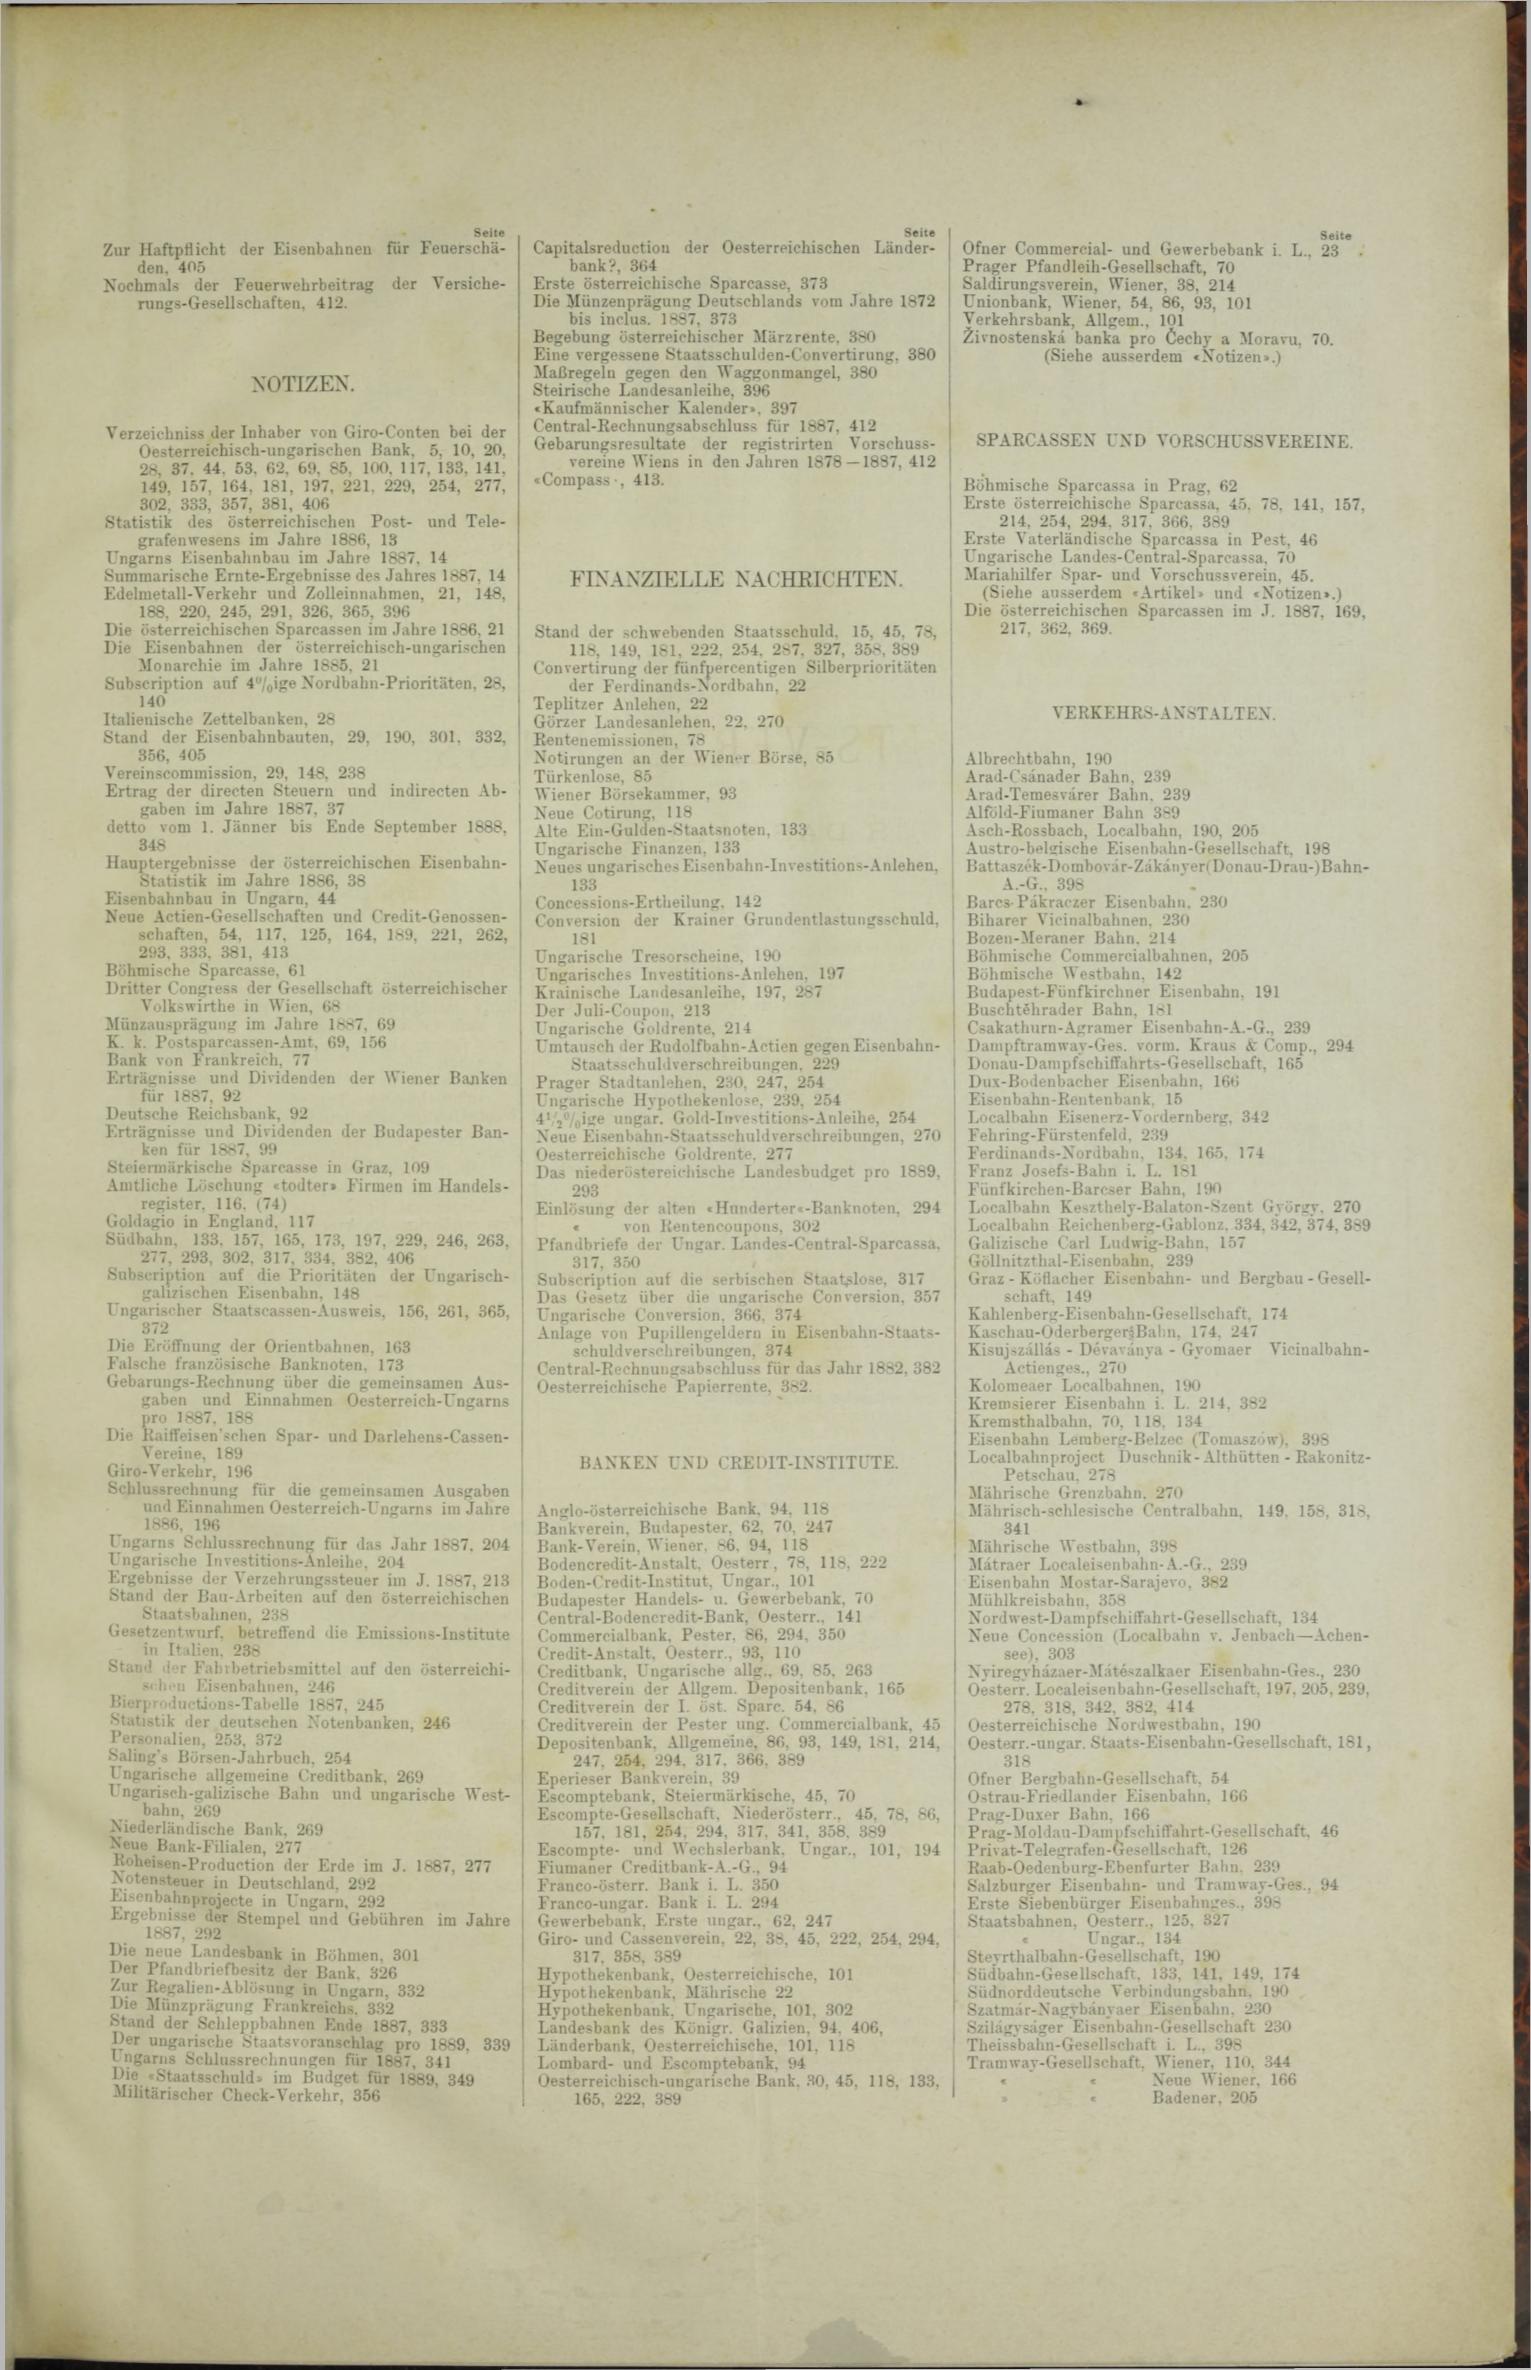 Der Tresor 25.10.1888 - Seite 11